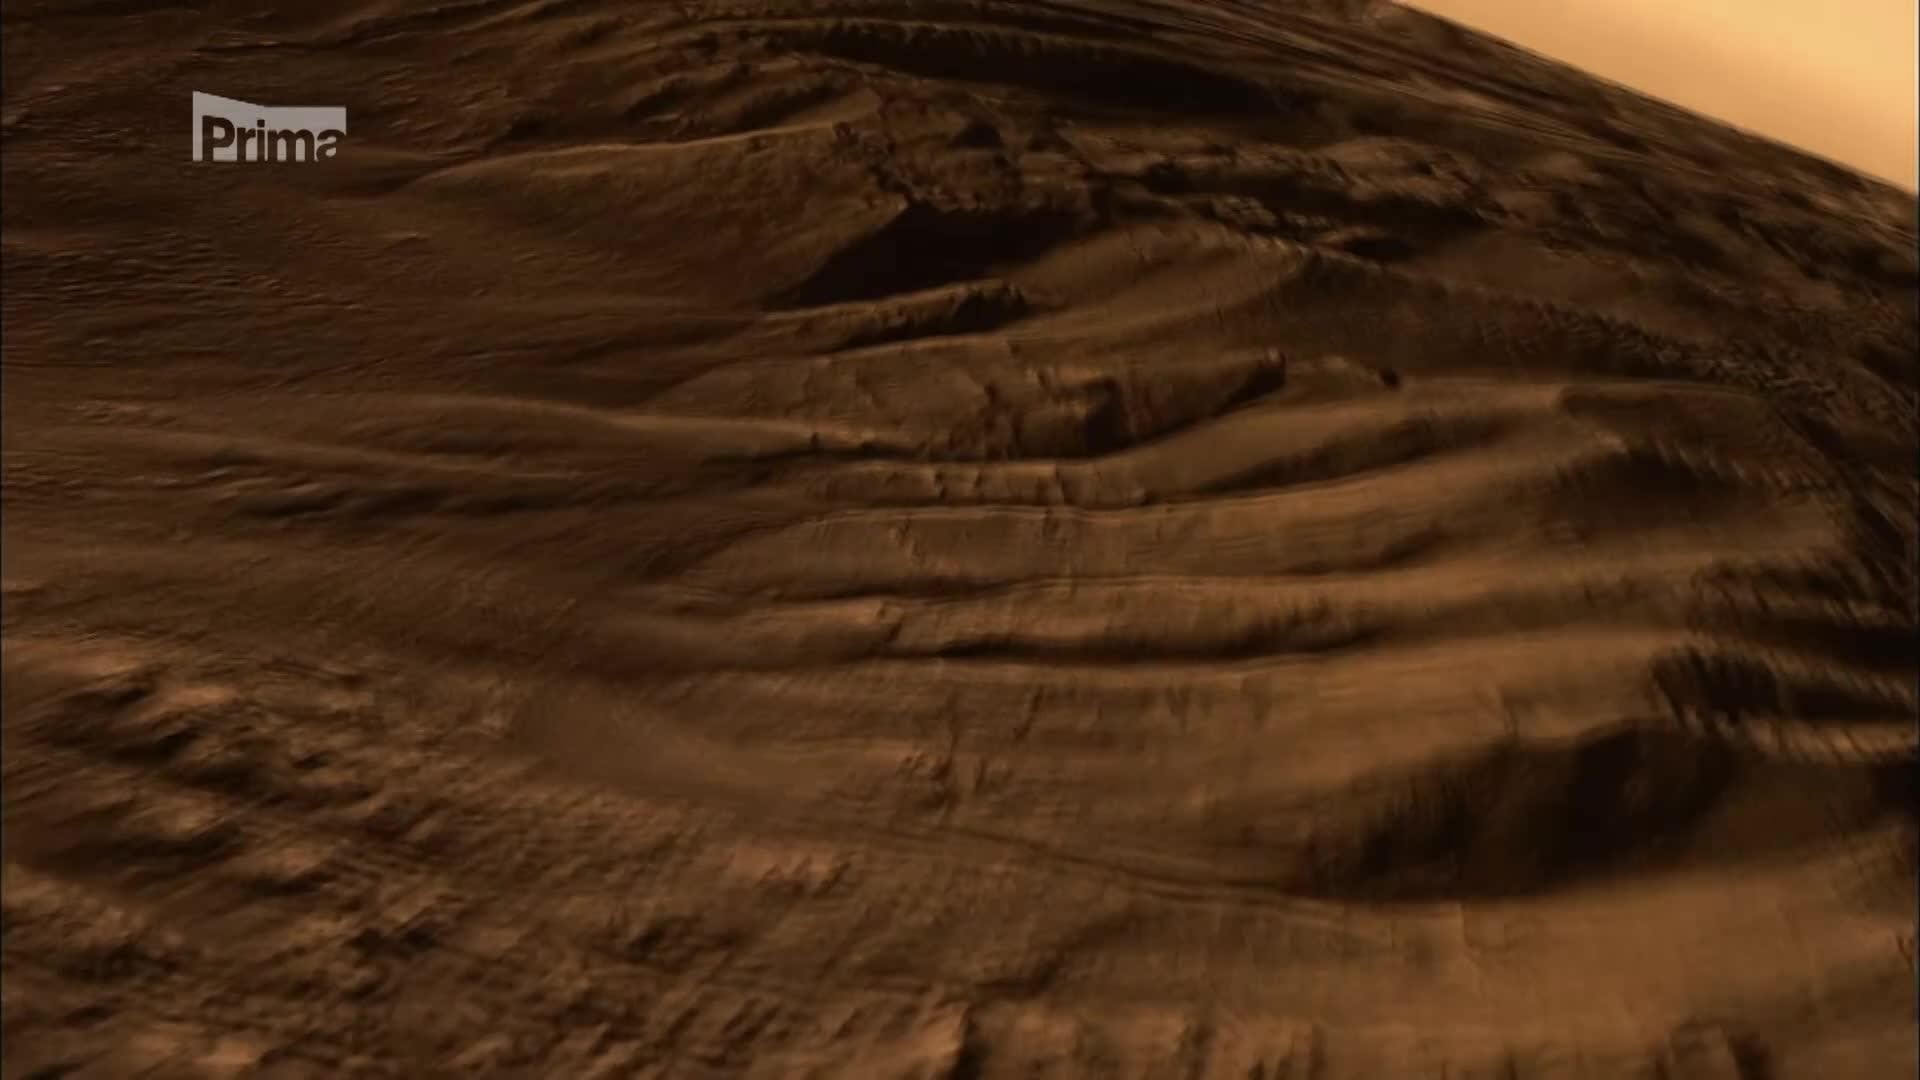 Putování k planetám 1 - mise Mars